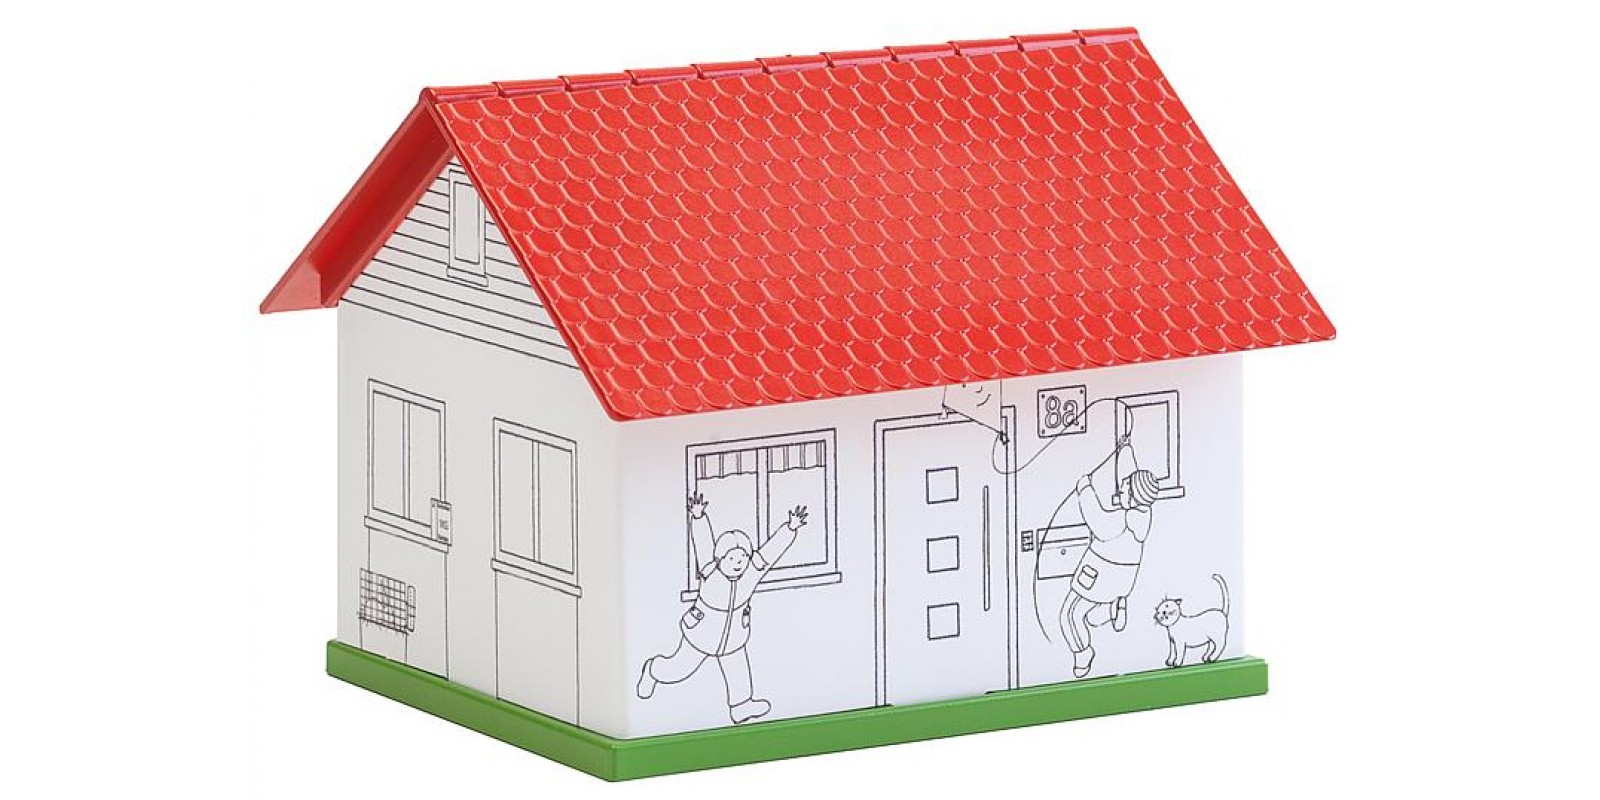 FA150191 BASIC painting house